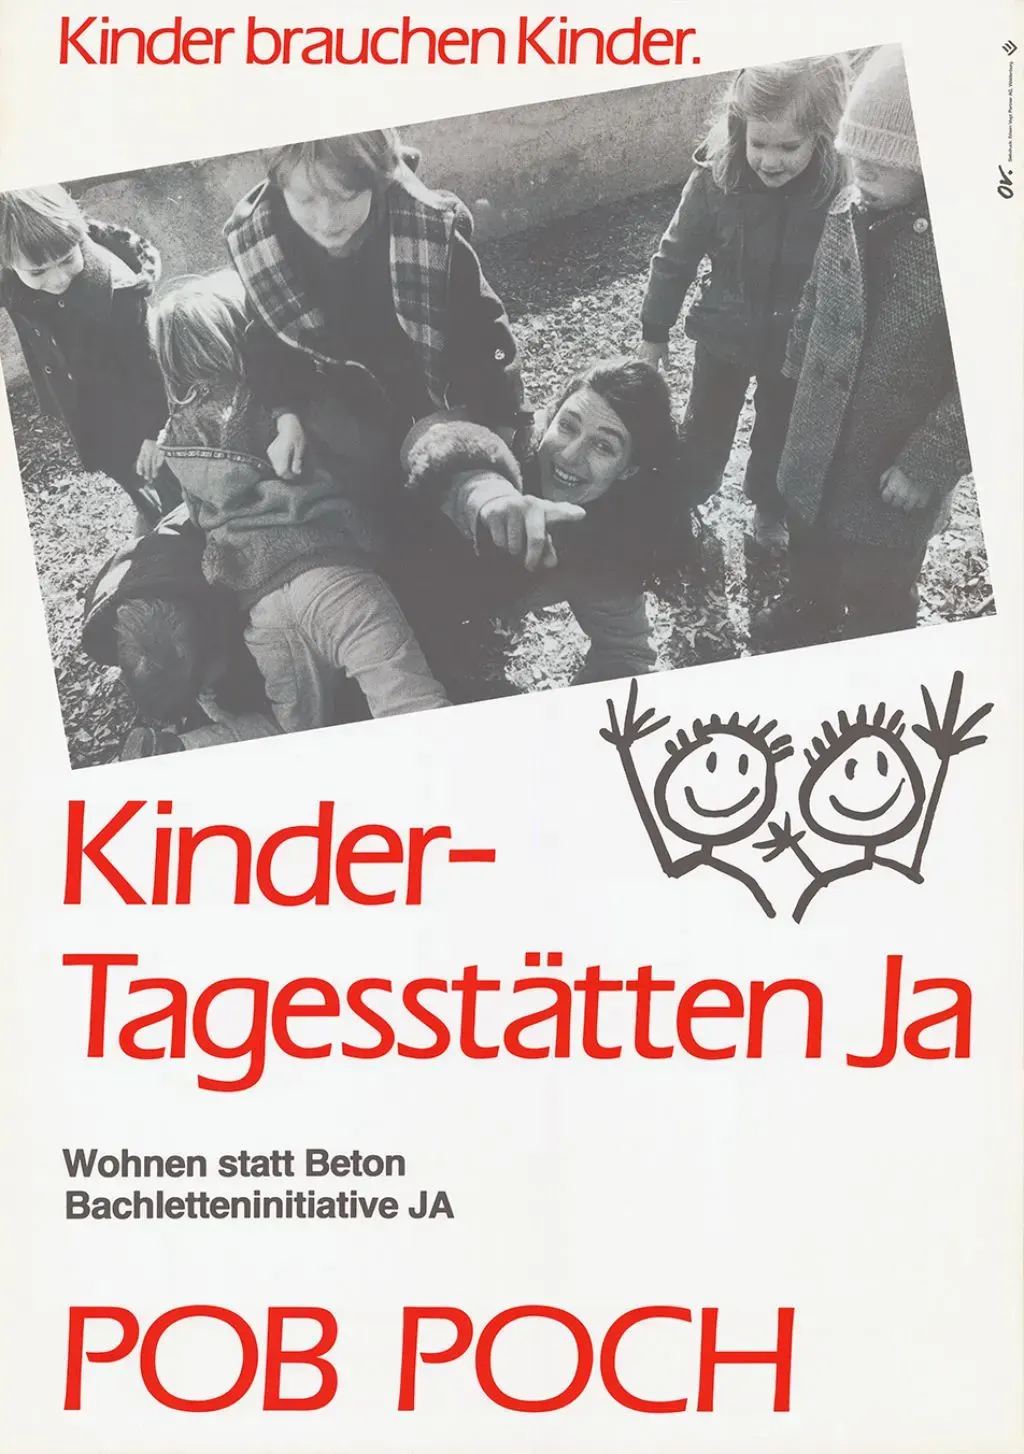 Abstimmungsplakat für mehr Kindertagesstätten der Progressiven Organisationen Basel (POB) im Jahr 1984